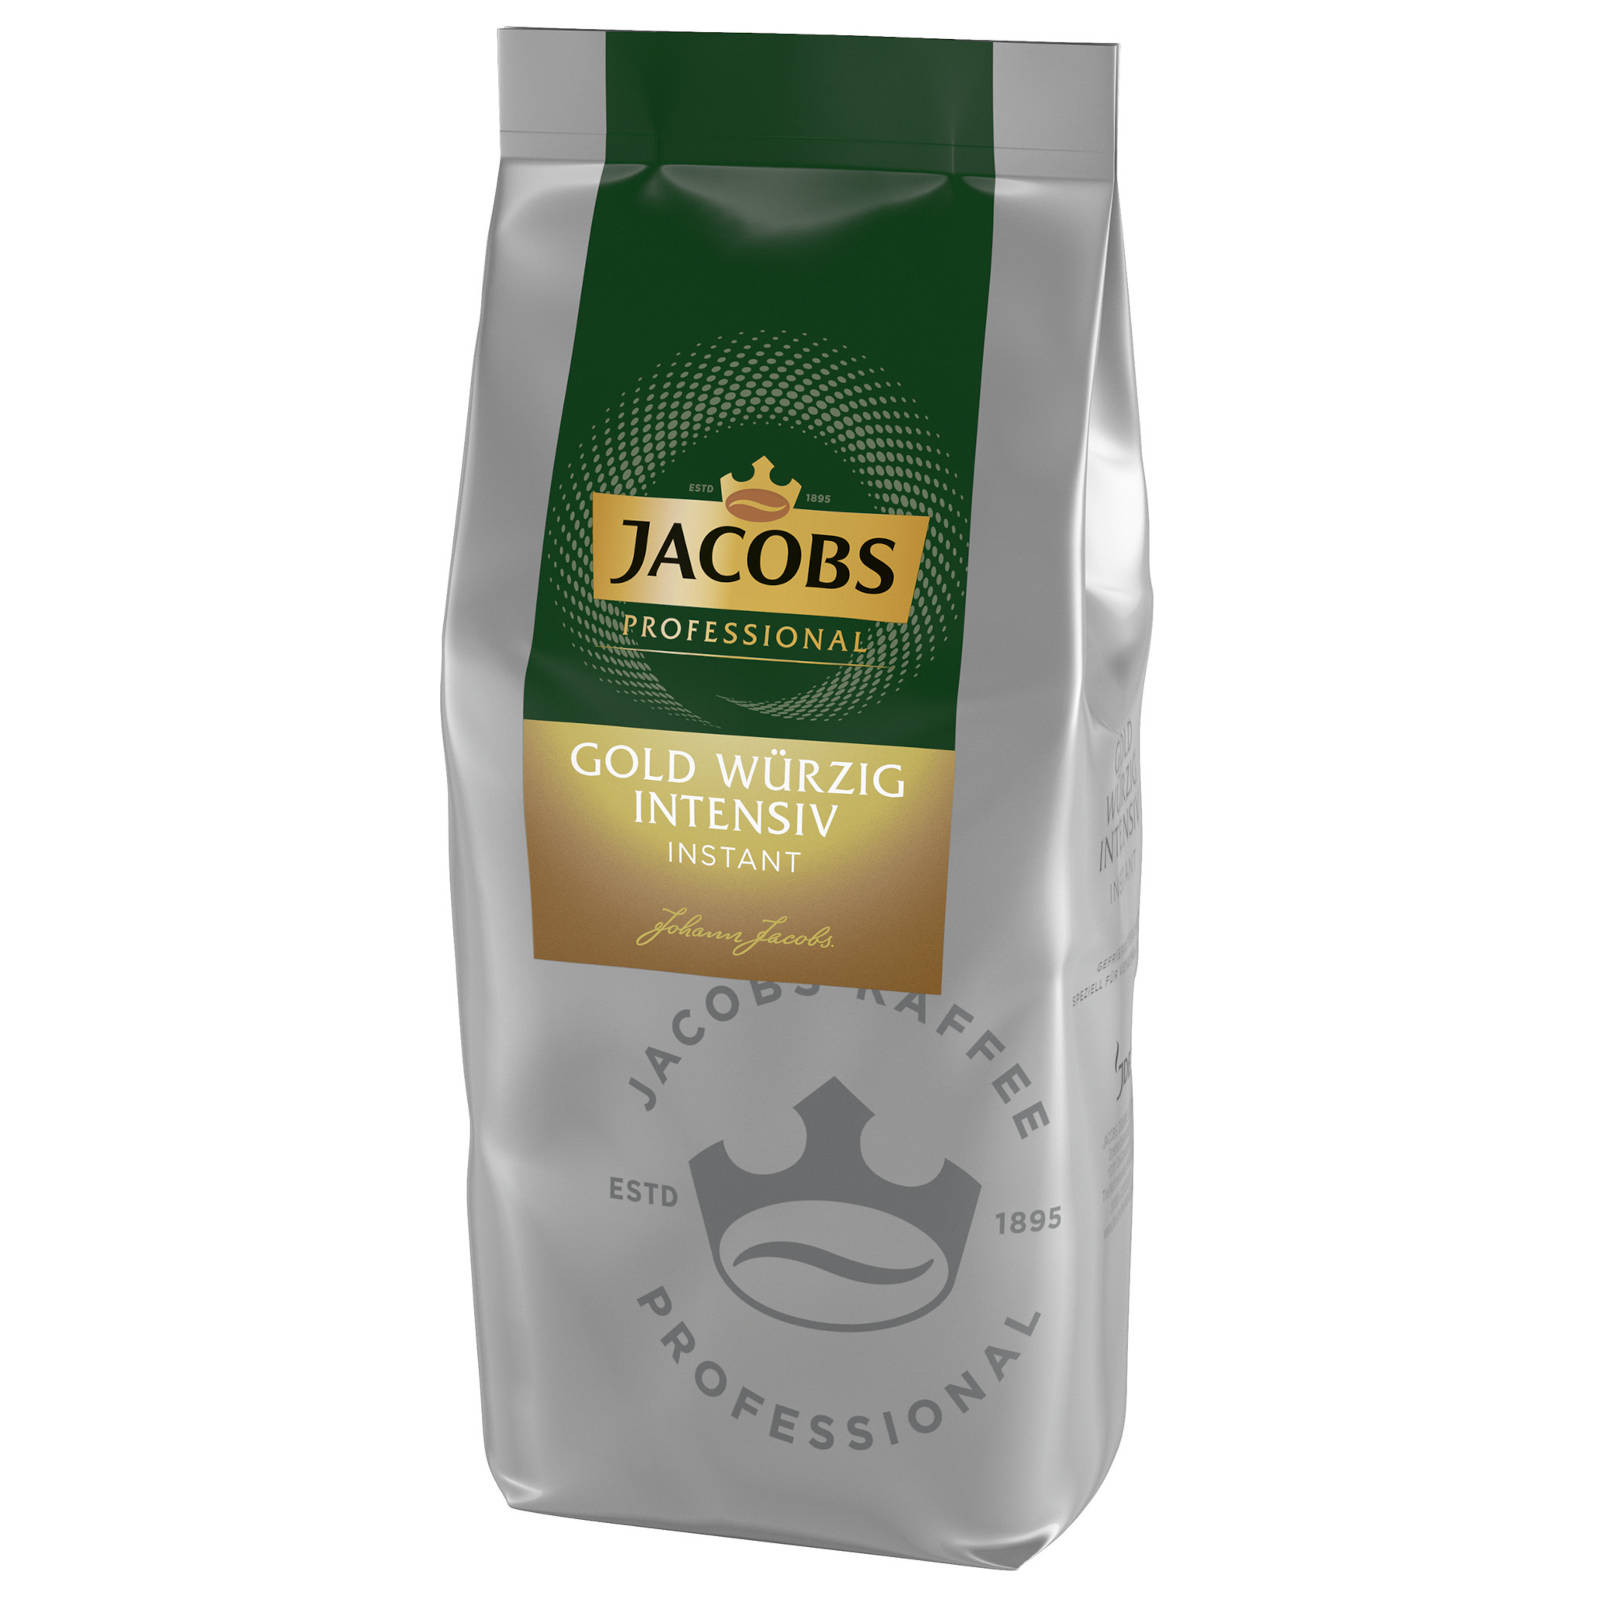 Professional 8x500 Wasser heißem JACOBS Instantkaffee (In Heißgetränkeautomaten) auflösen, Würzig Gold g